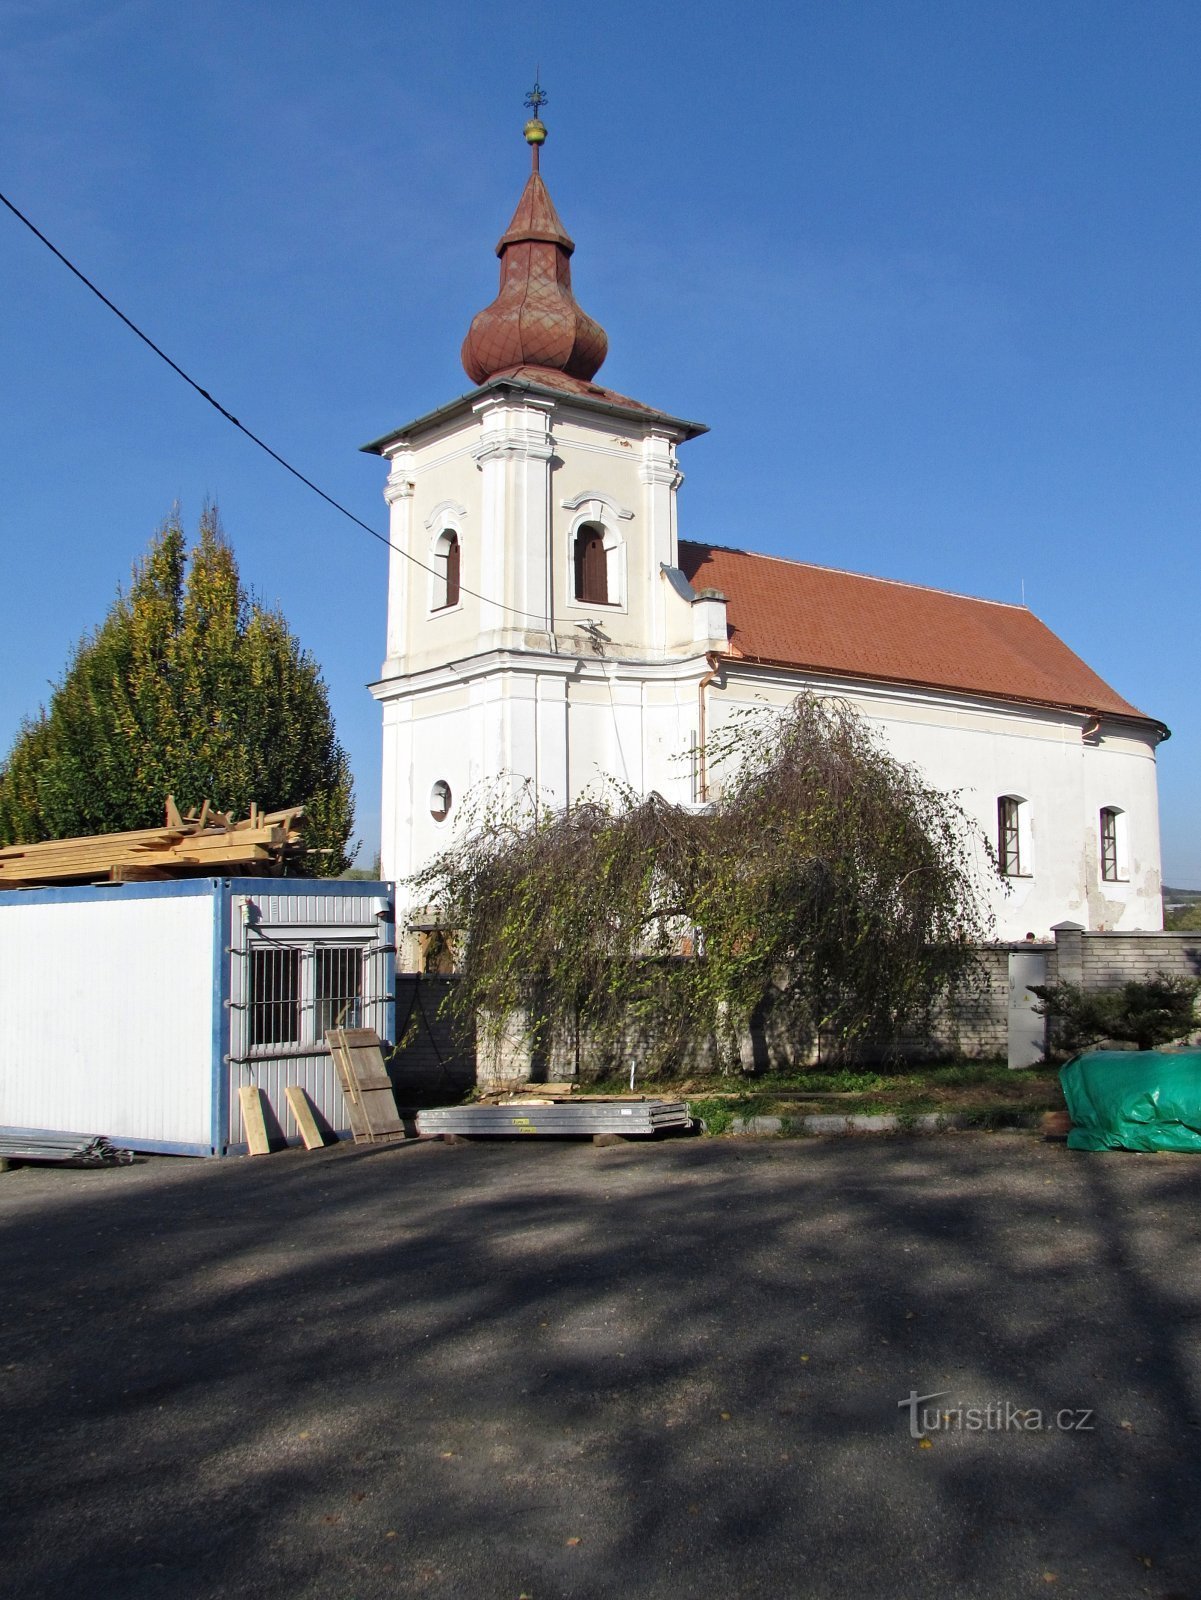 Leopoldov - Szent Giles templom